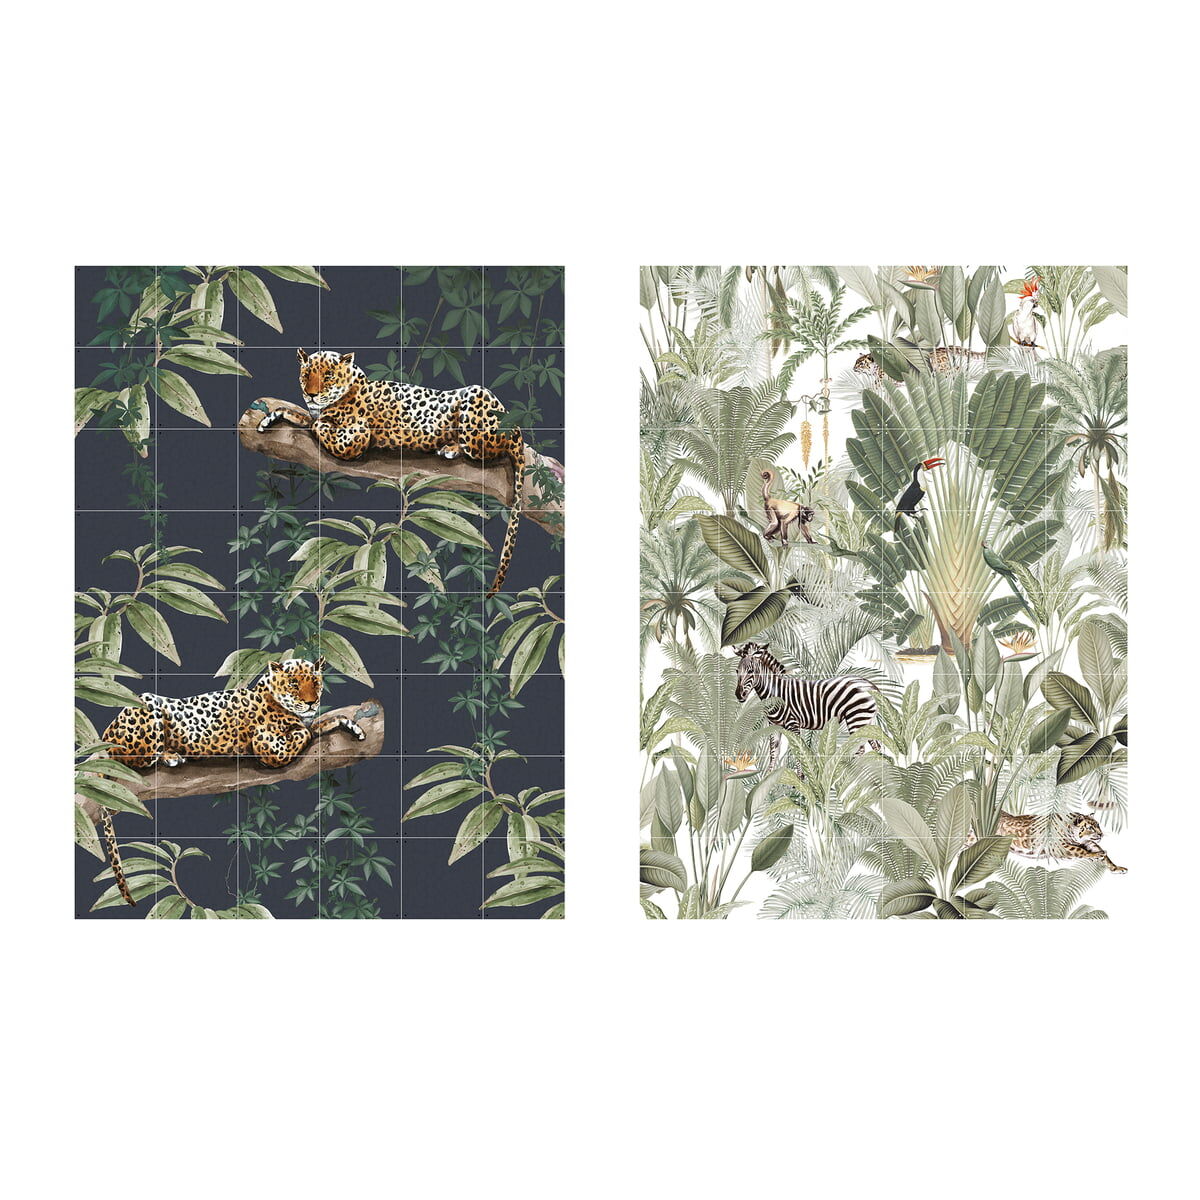 IXXI - Chilling in the Jungle & Into the wild, 120 x 160 cm